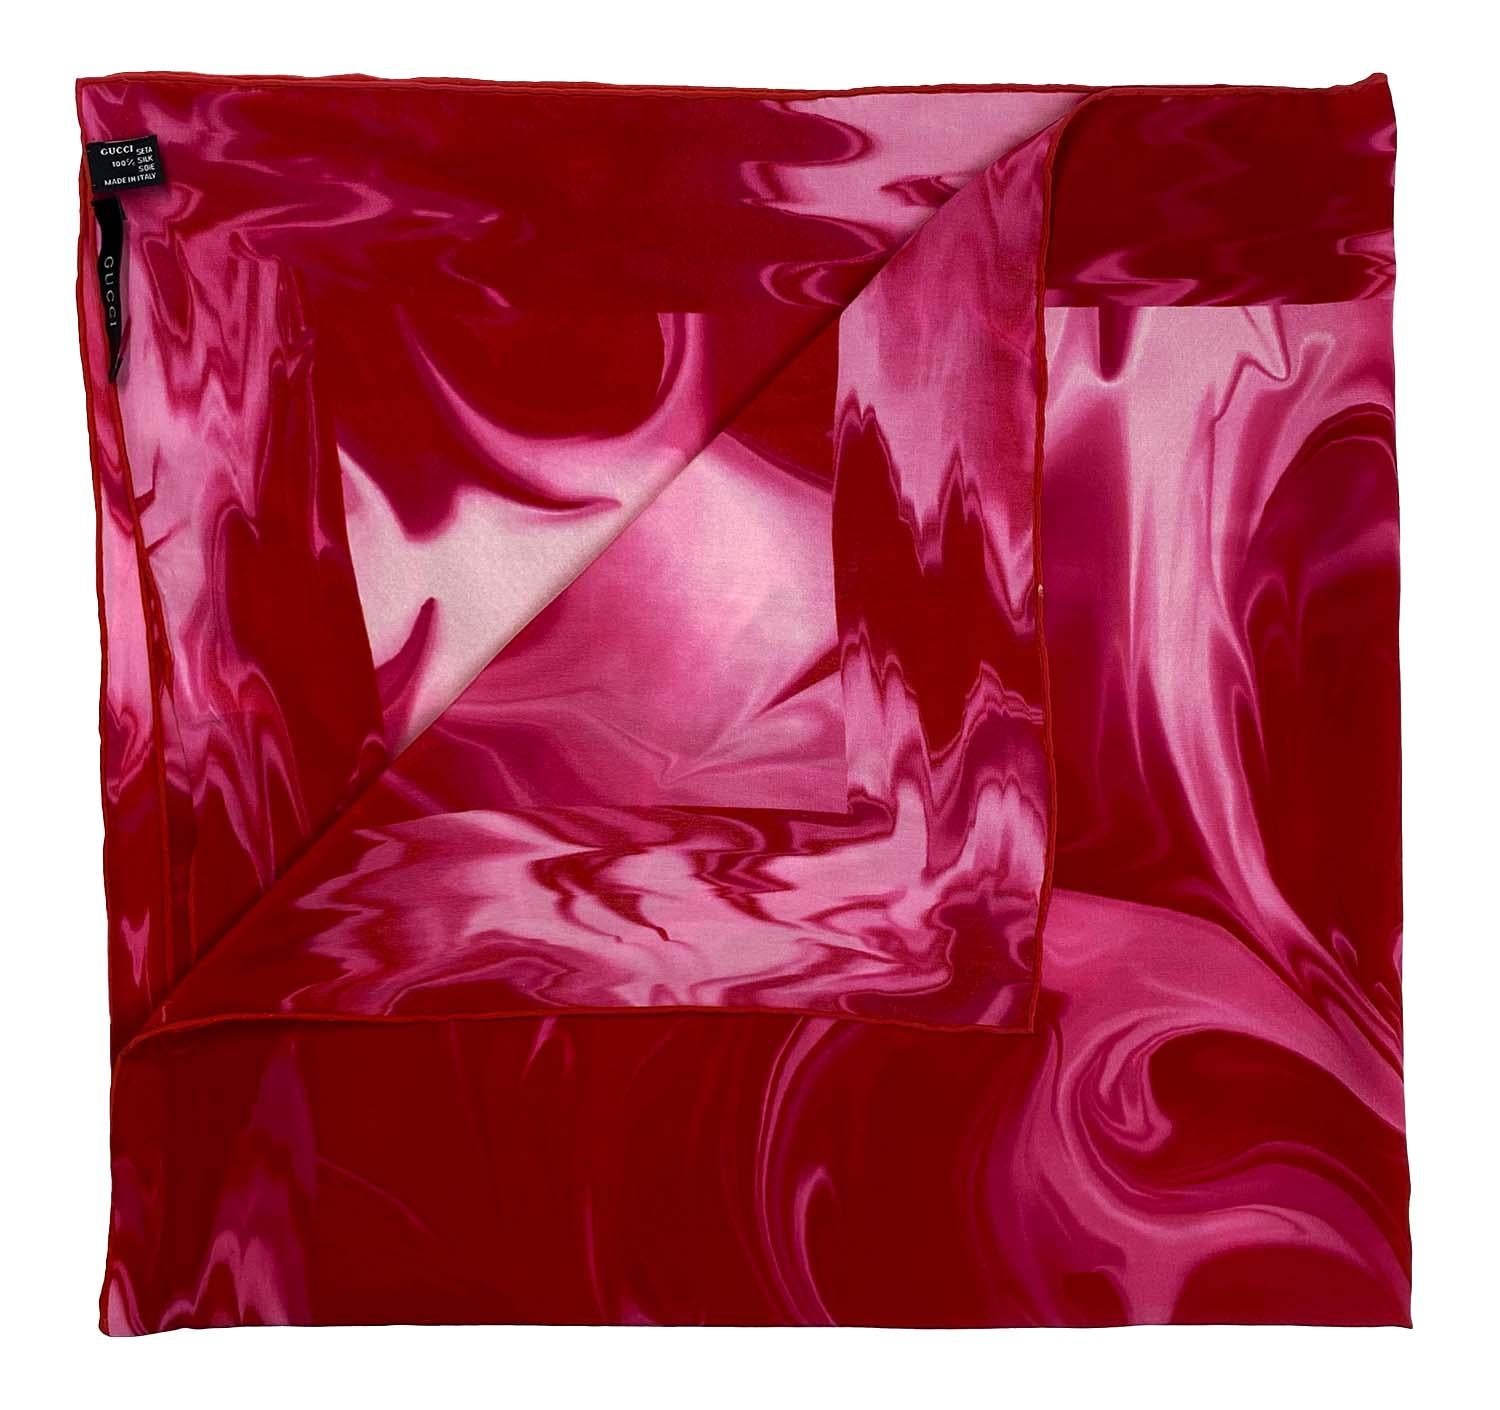 Wir präsentieren einen seltenen Gucci-Schal mit rosa Lavadruck, entworfen von Tom Ford. Das Lava-Design wurde erstmals auf dem Laufsteg für Frühjahr/Sommer 2001 für Männer gezeigt und fand auch in der Damenmode breite Verwendung. Dieser Druck war